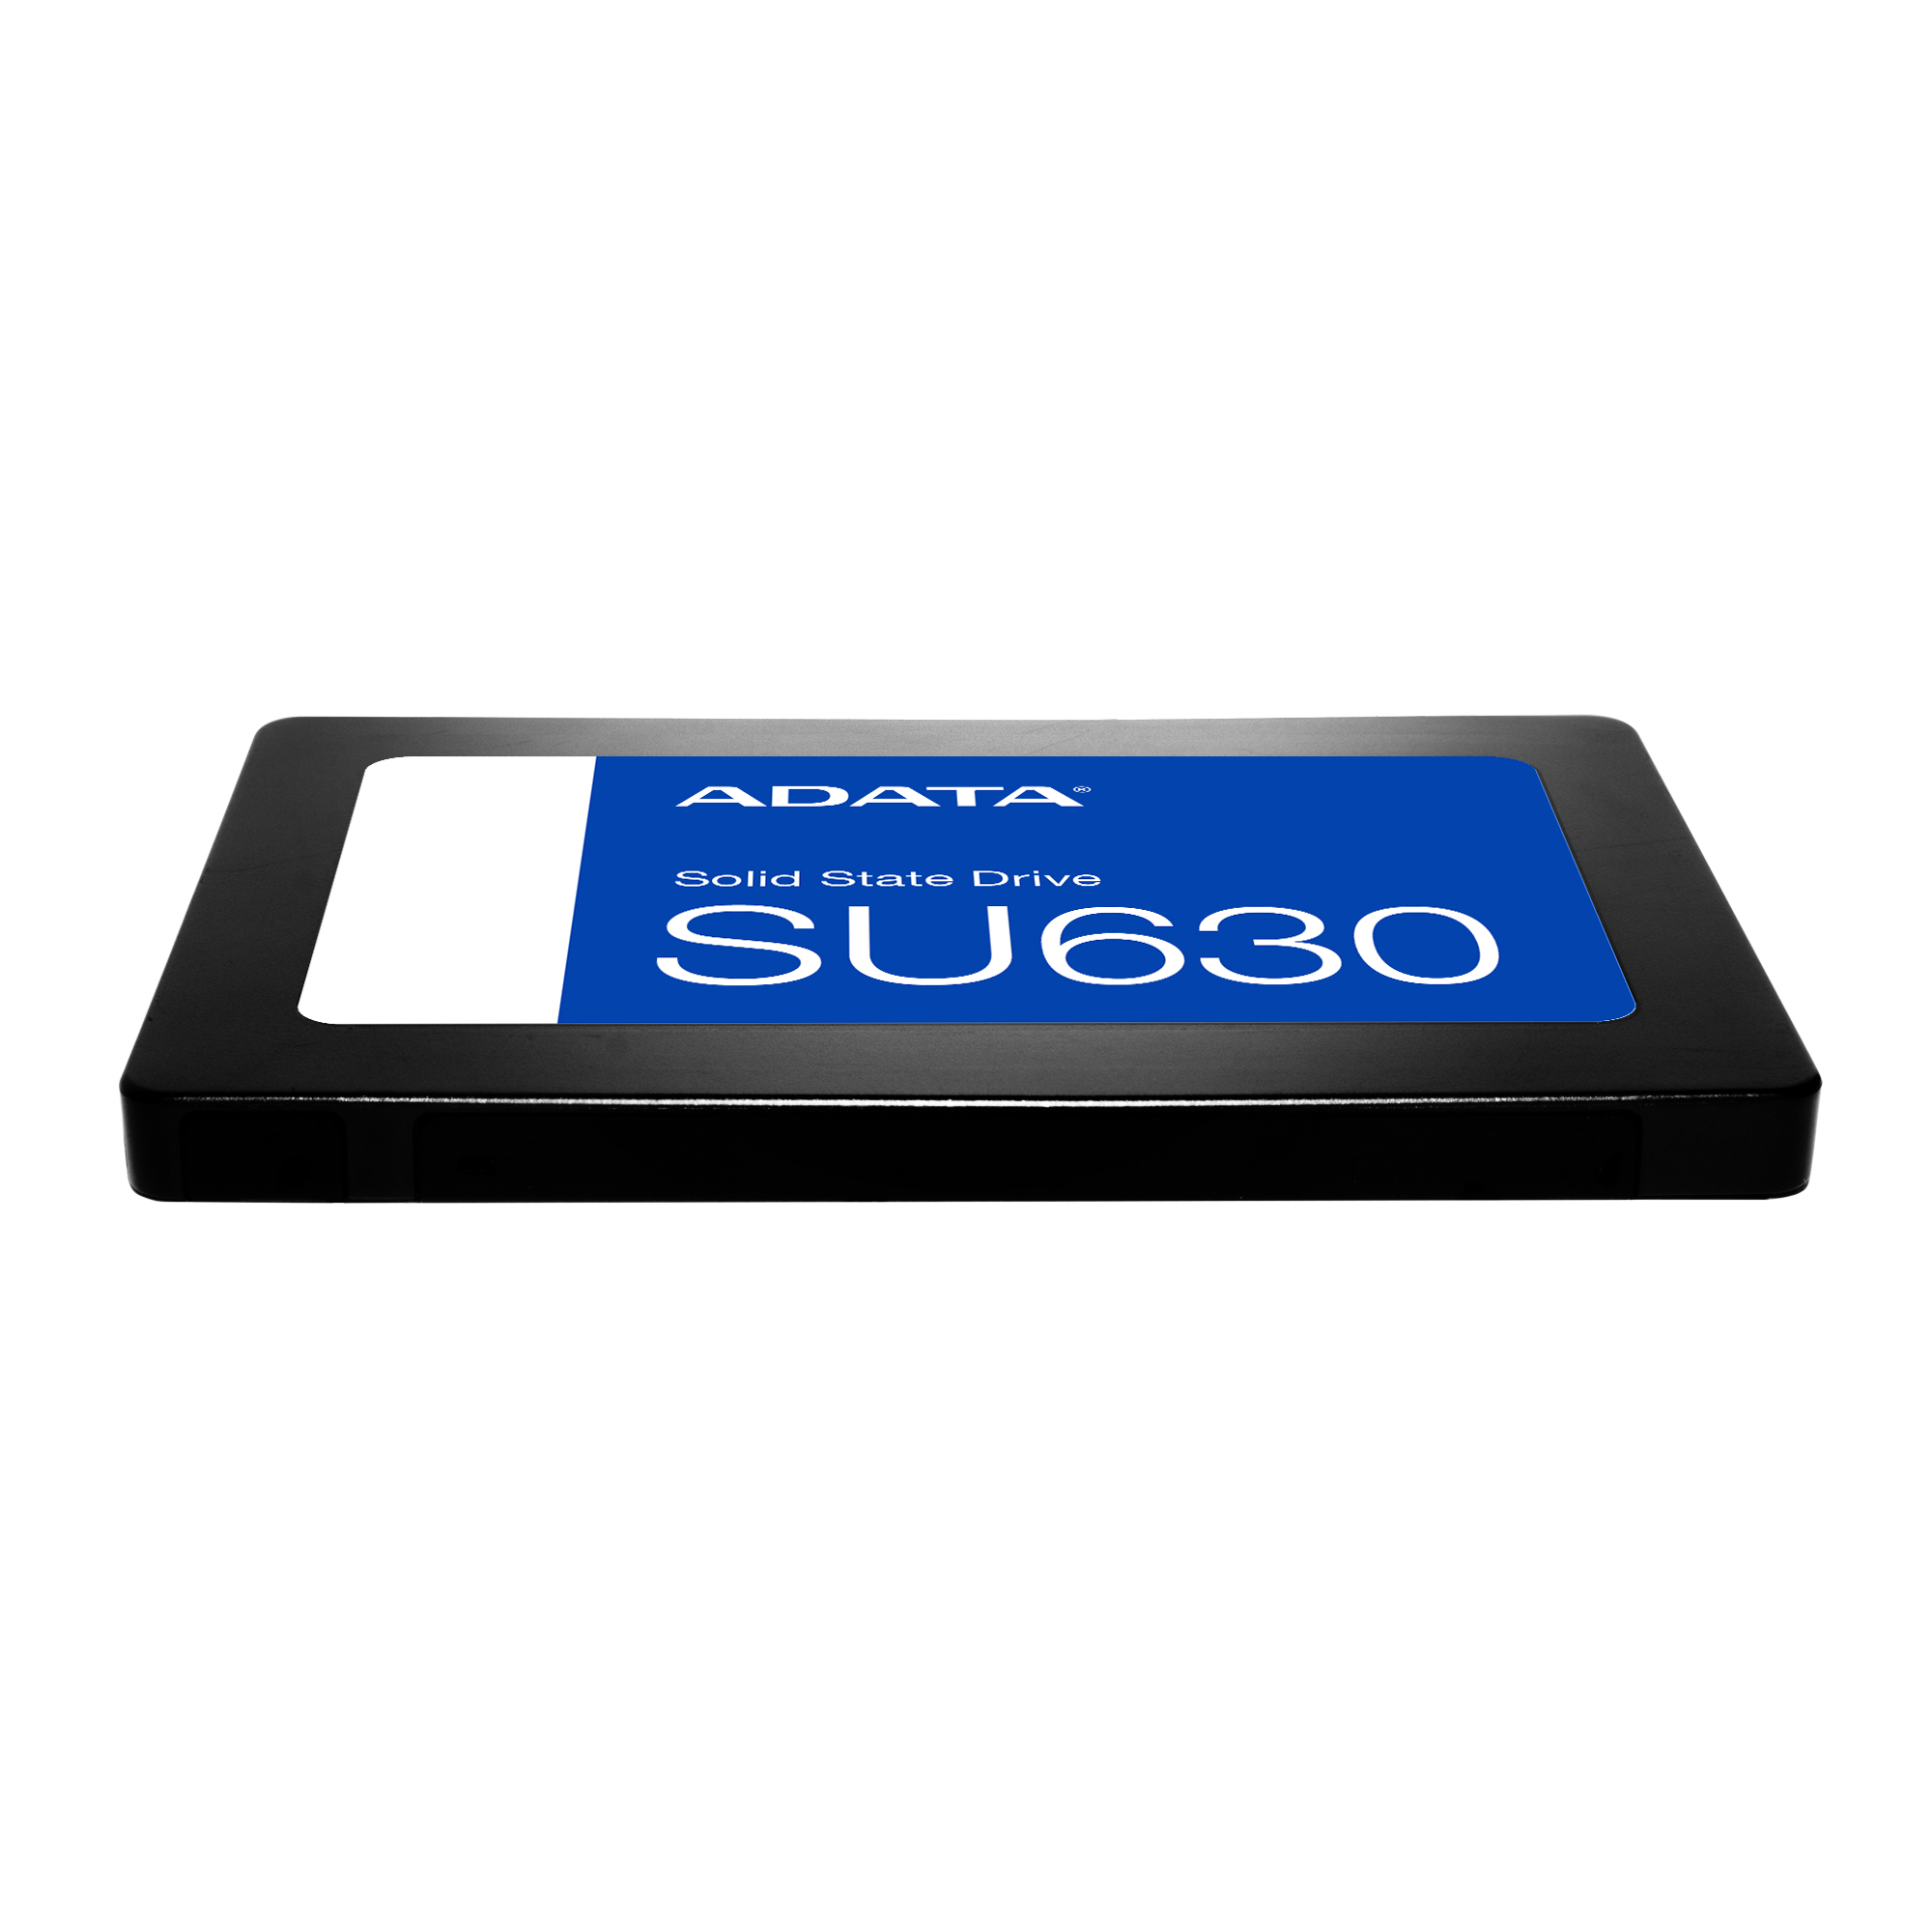 【新品・未開封品】ADATA Ultimate SU630 2.5インチ SSD